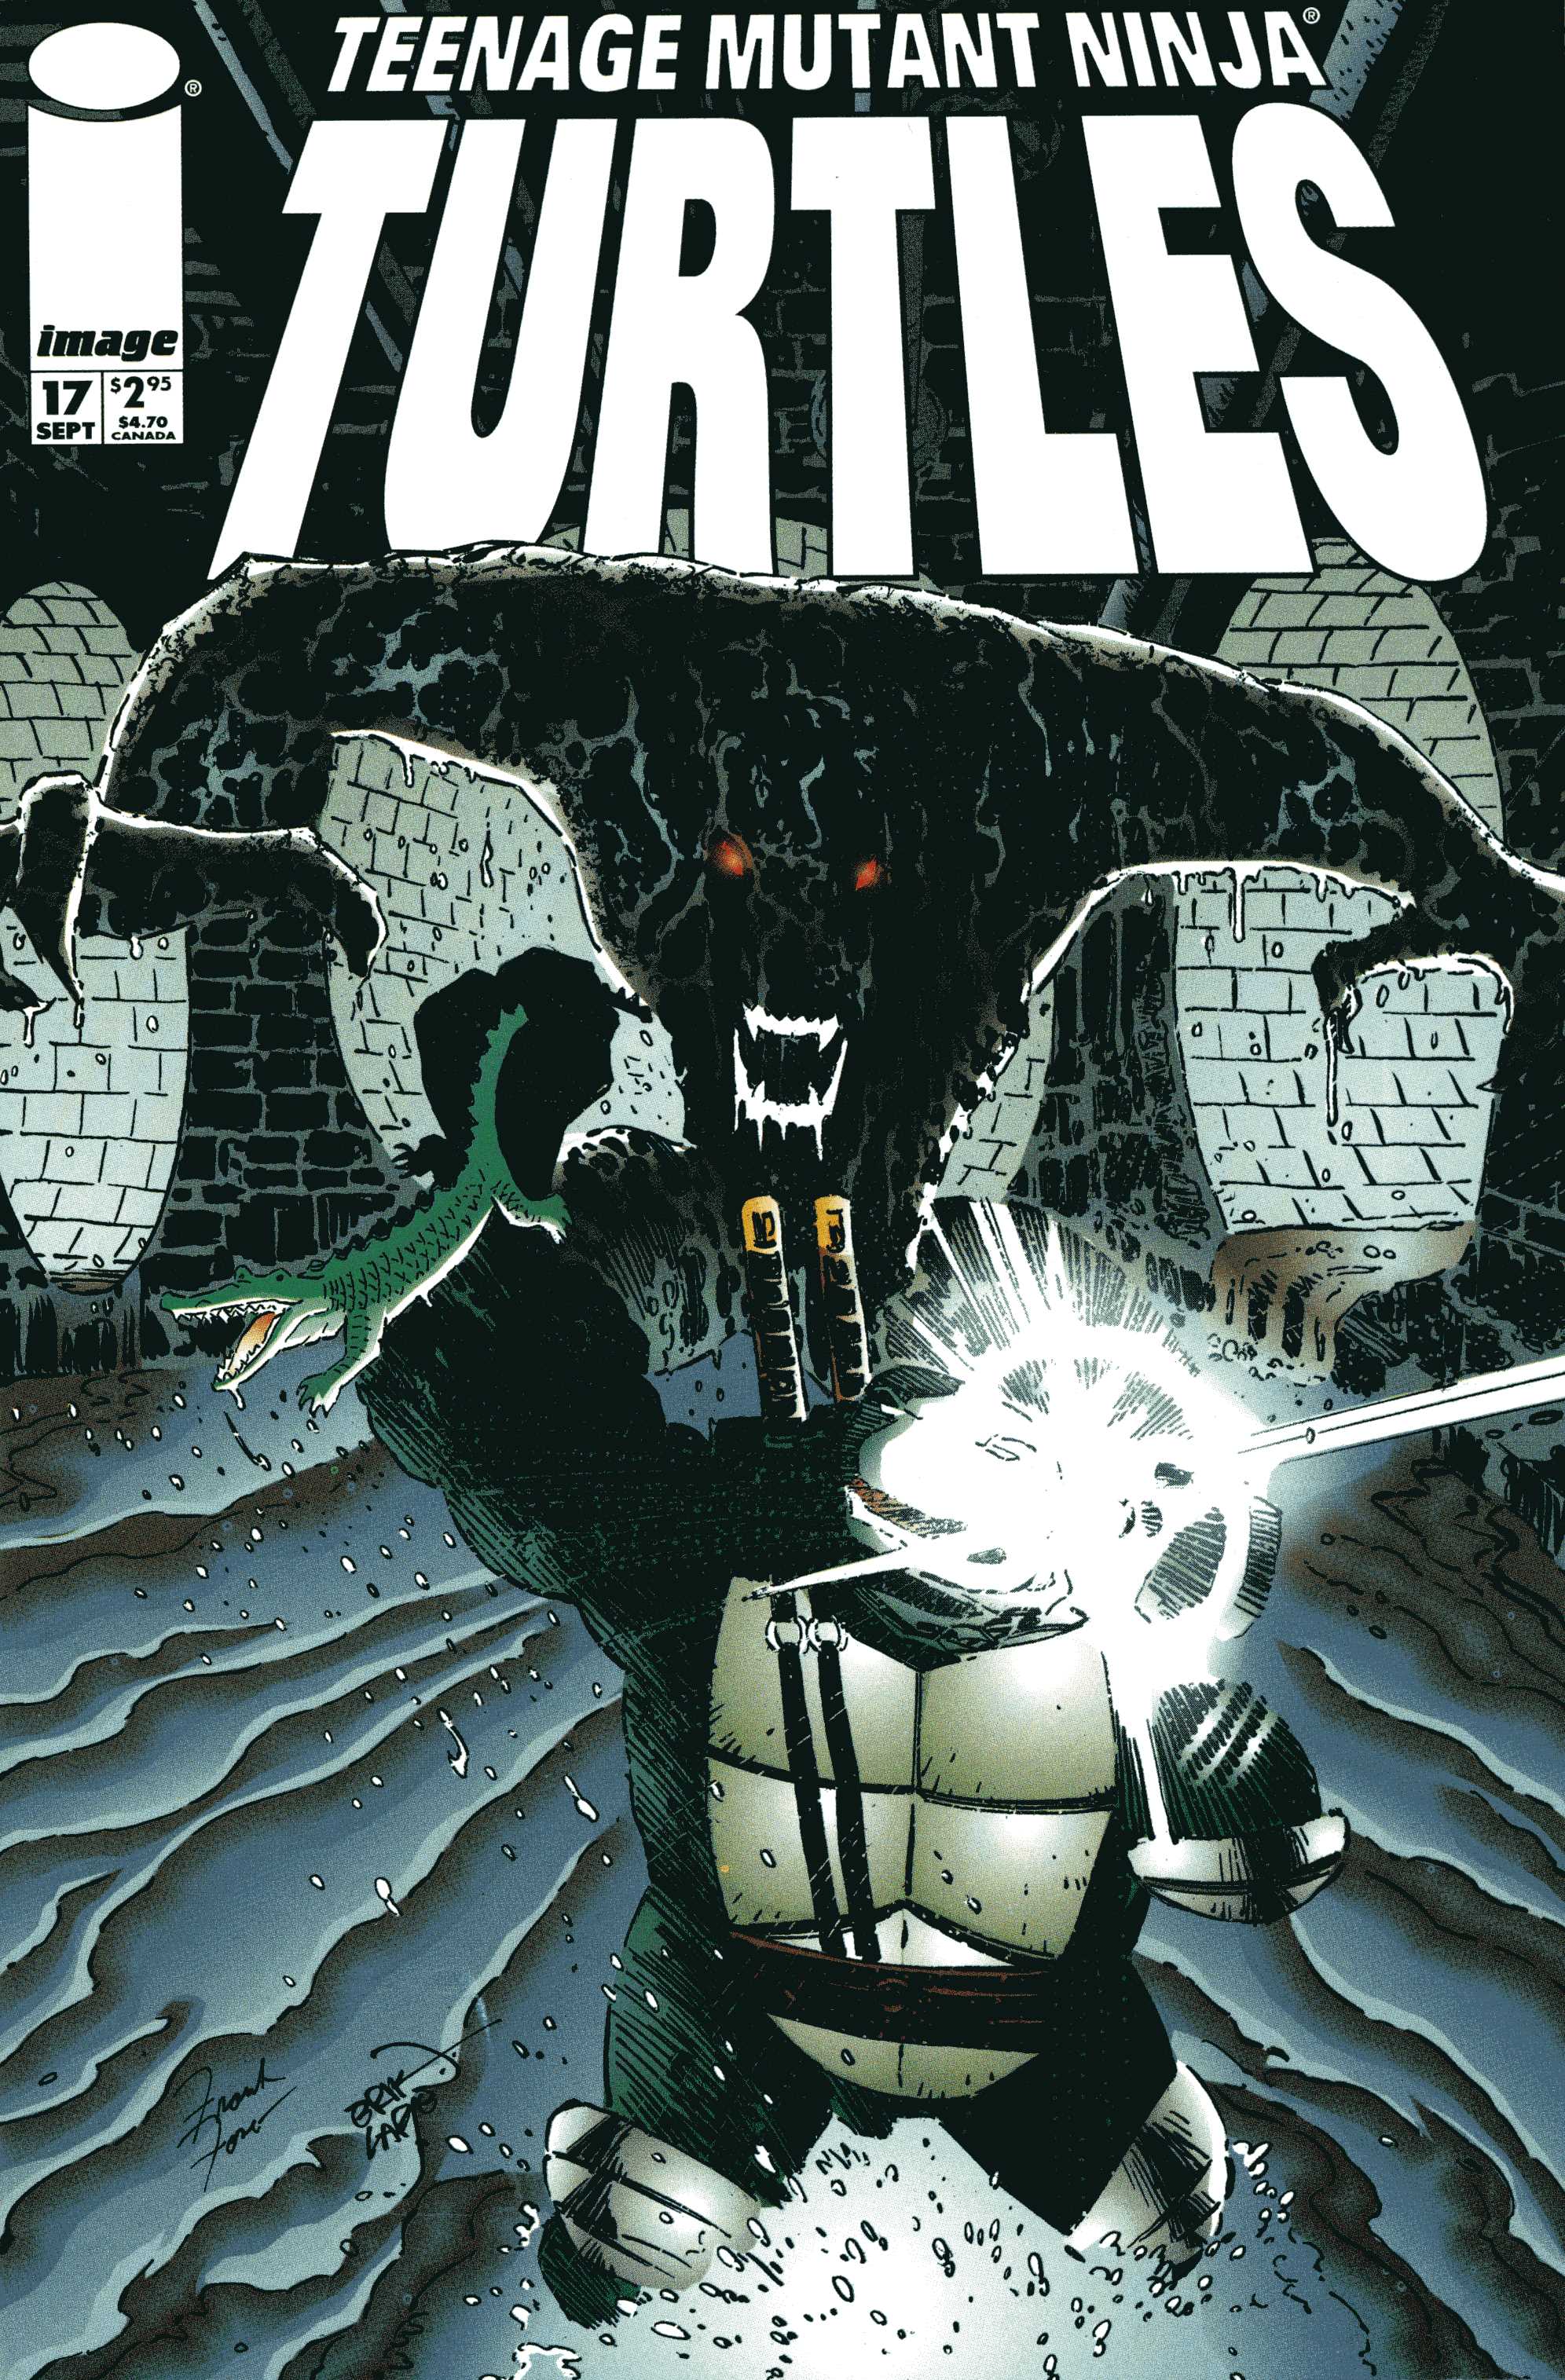 Teenage Mutant Ninja Turtles (1996) Issue #17 #17 - English 1